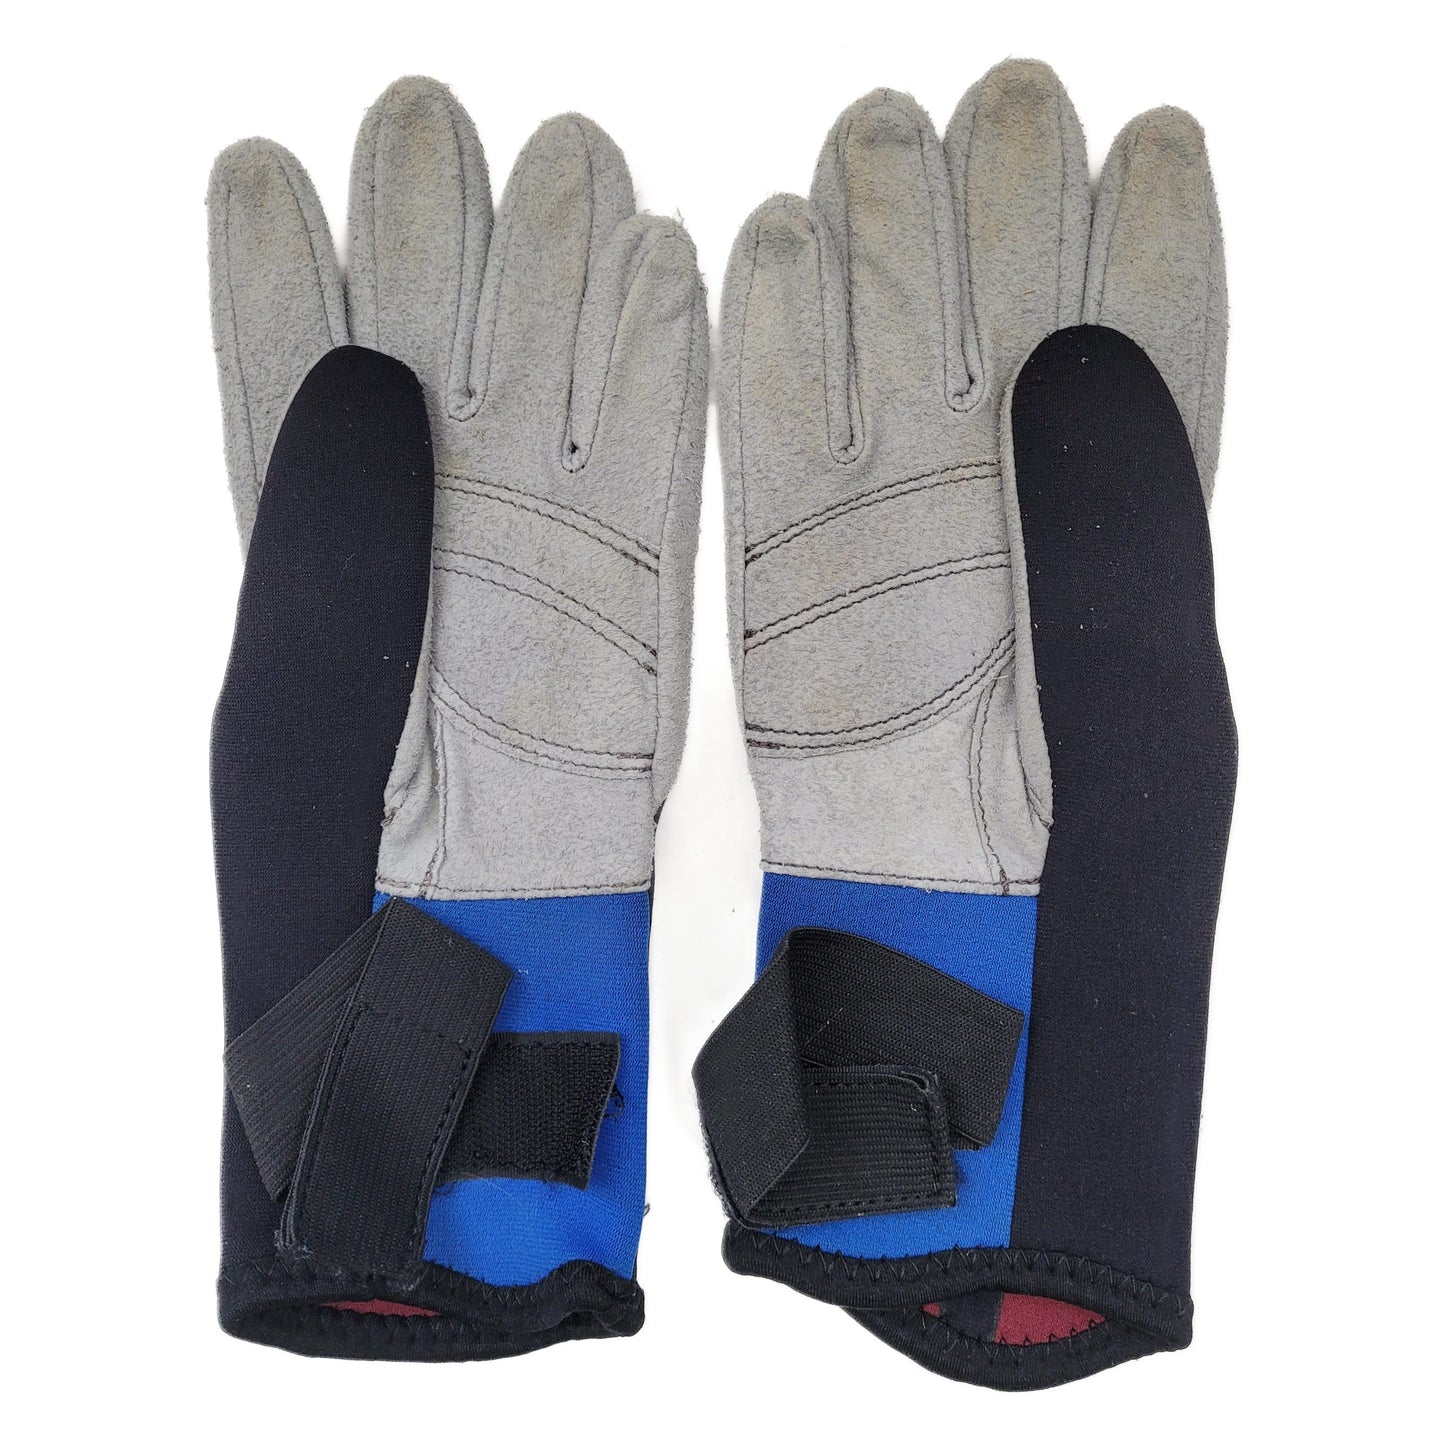 Oceanic 3mm Dive Gloves "M"